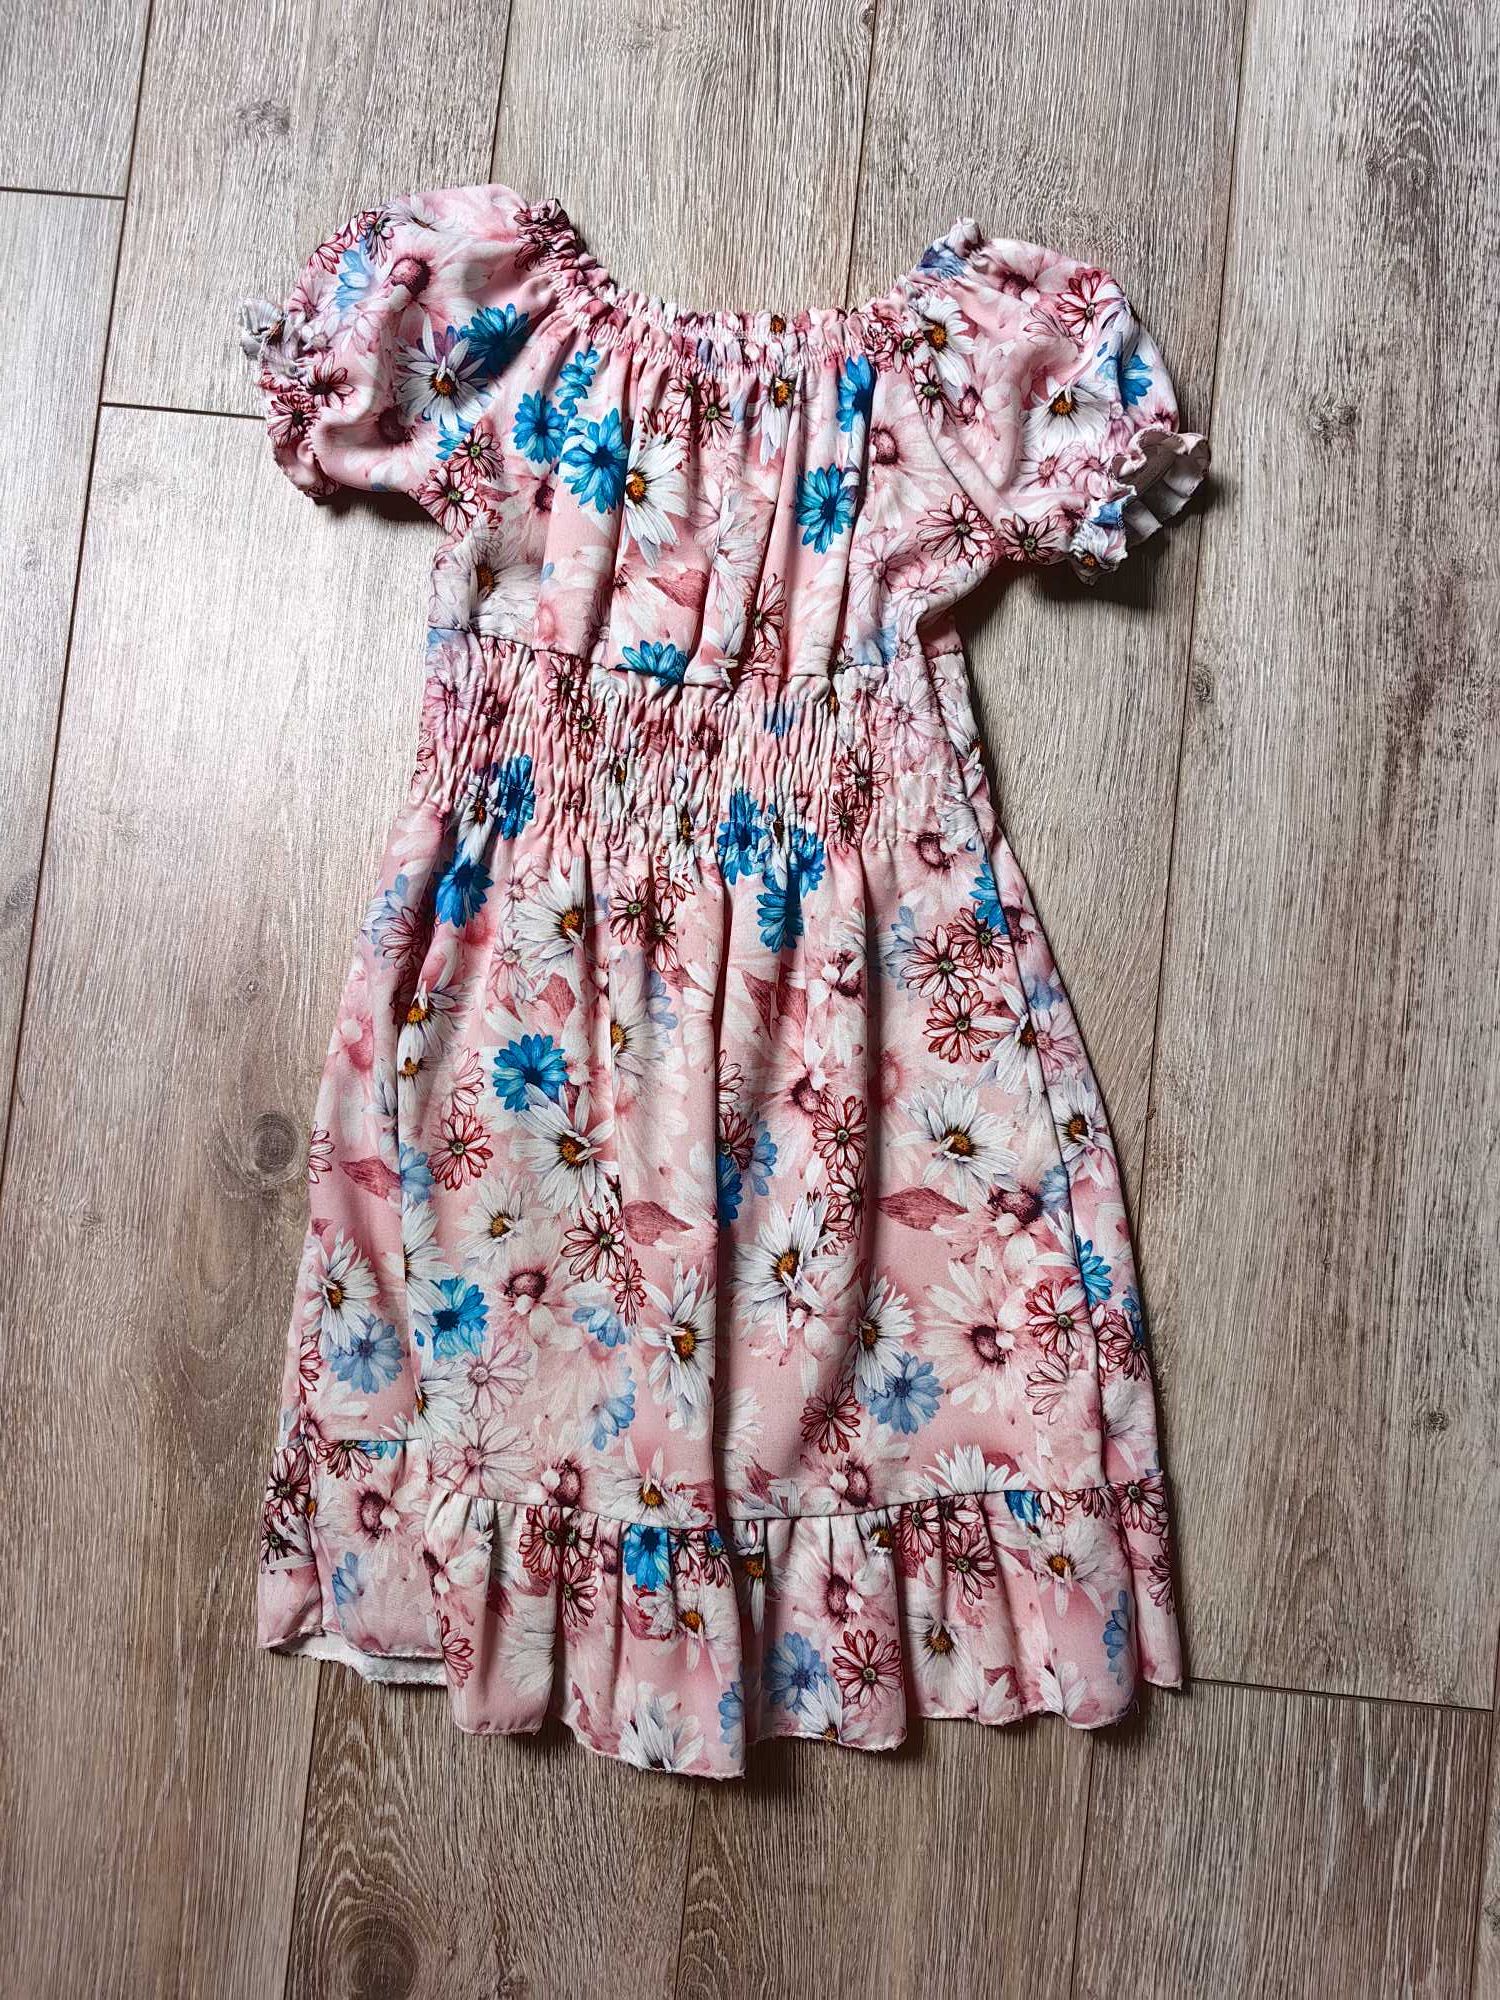 3 sukienki dla dziewczynek Sinsey-wiosenna +Gratis opaska:)